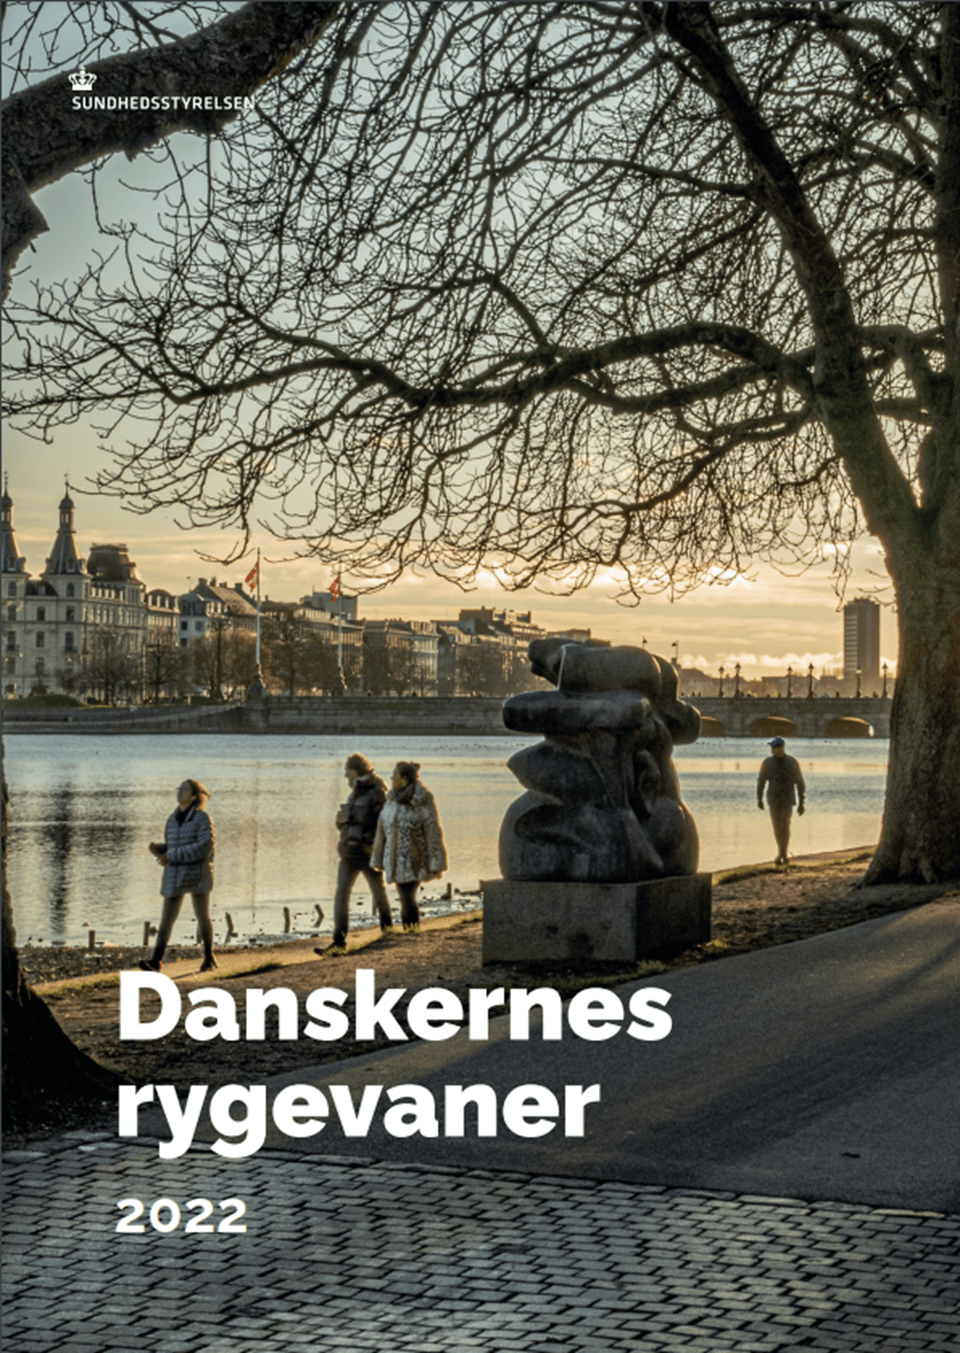 Danskernes rygevaner 2022